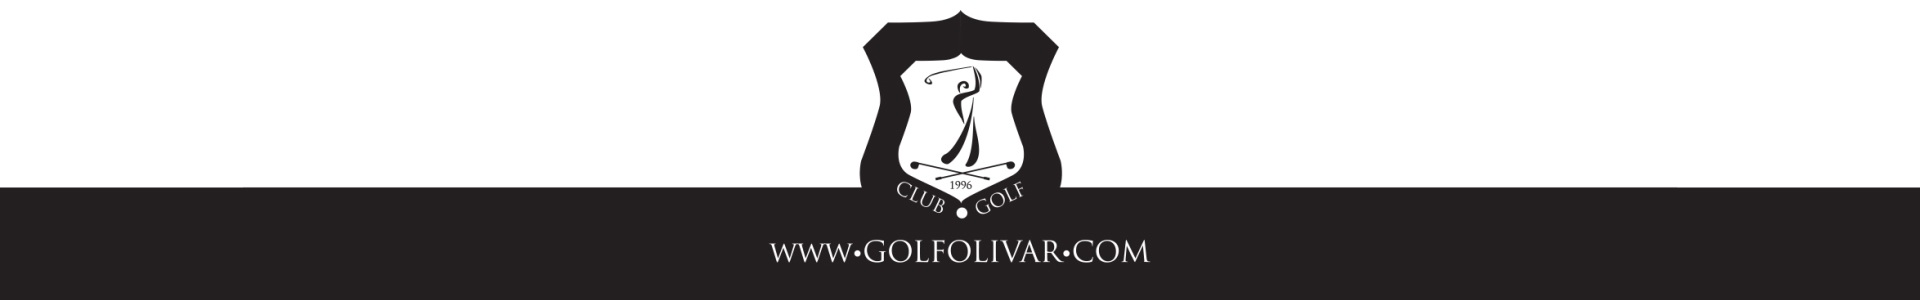 https://olivar.golf/wp-content/uploads/2016/02/Footer-Olivar-Hinojosa-Campo-de-las-Naciones-Golf-by-PerfectPixel-Publicidad.jpg